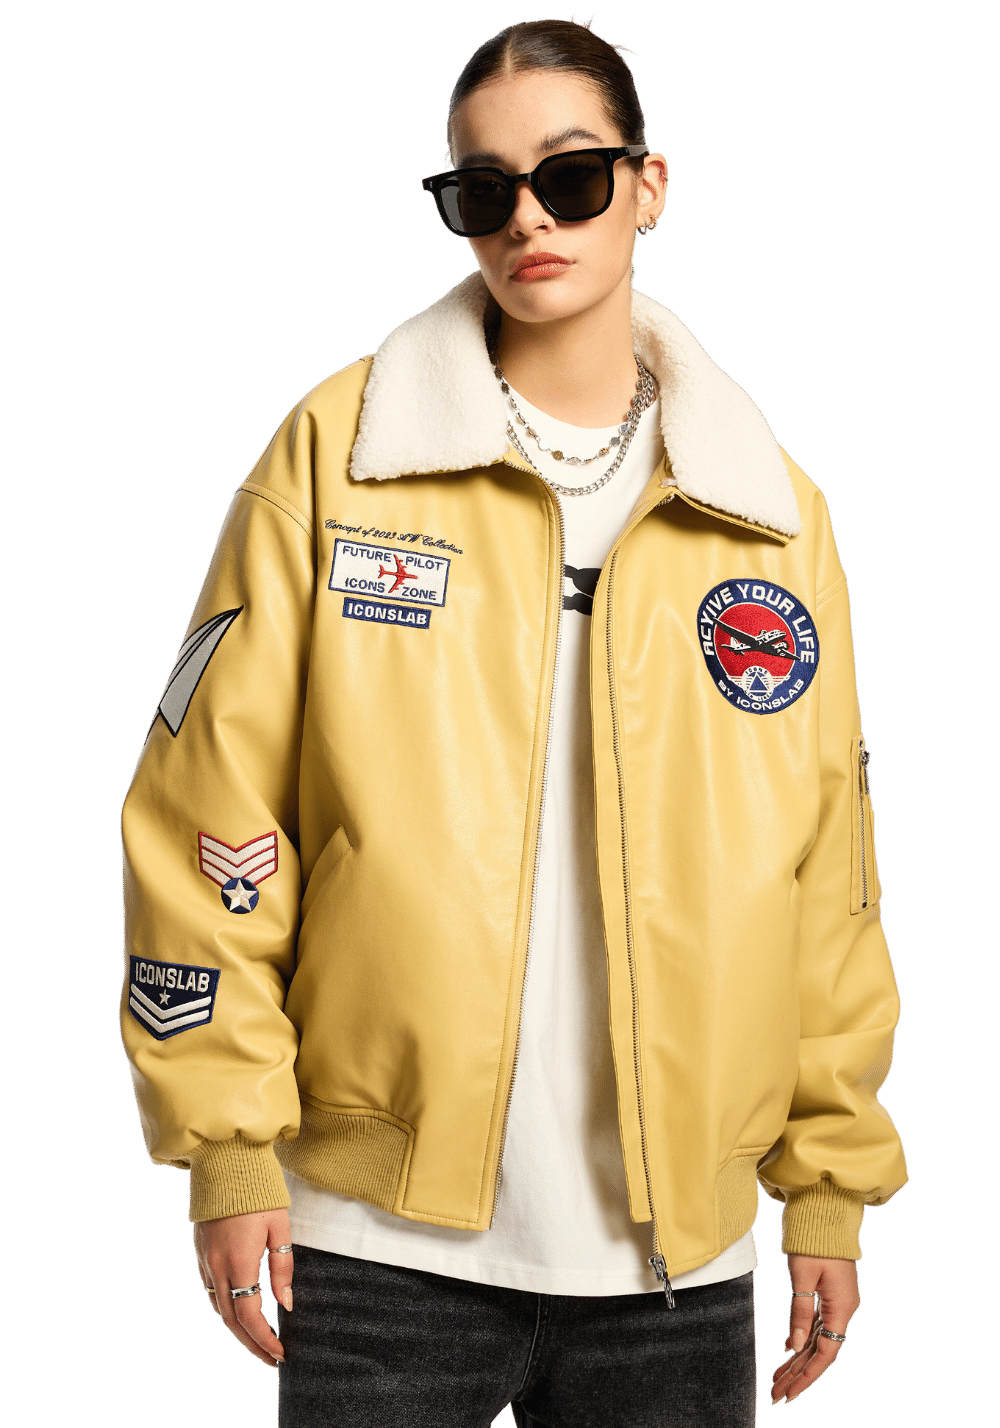 Shearling Collar Jacket - PSYLOS 1, Shearling Collar Jacket, Jacket, iconslab, PSYLOS 1